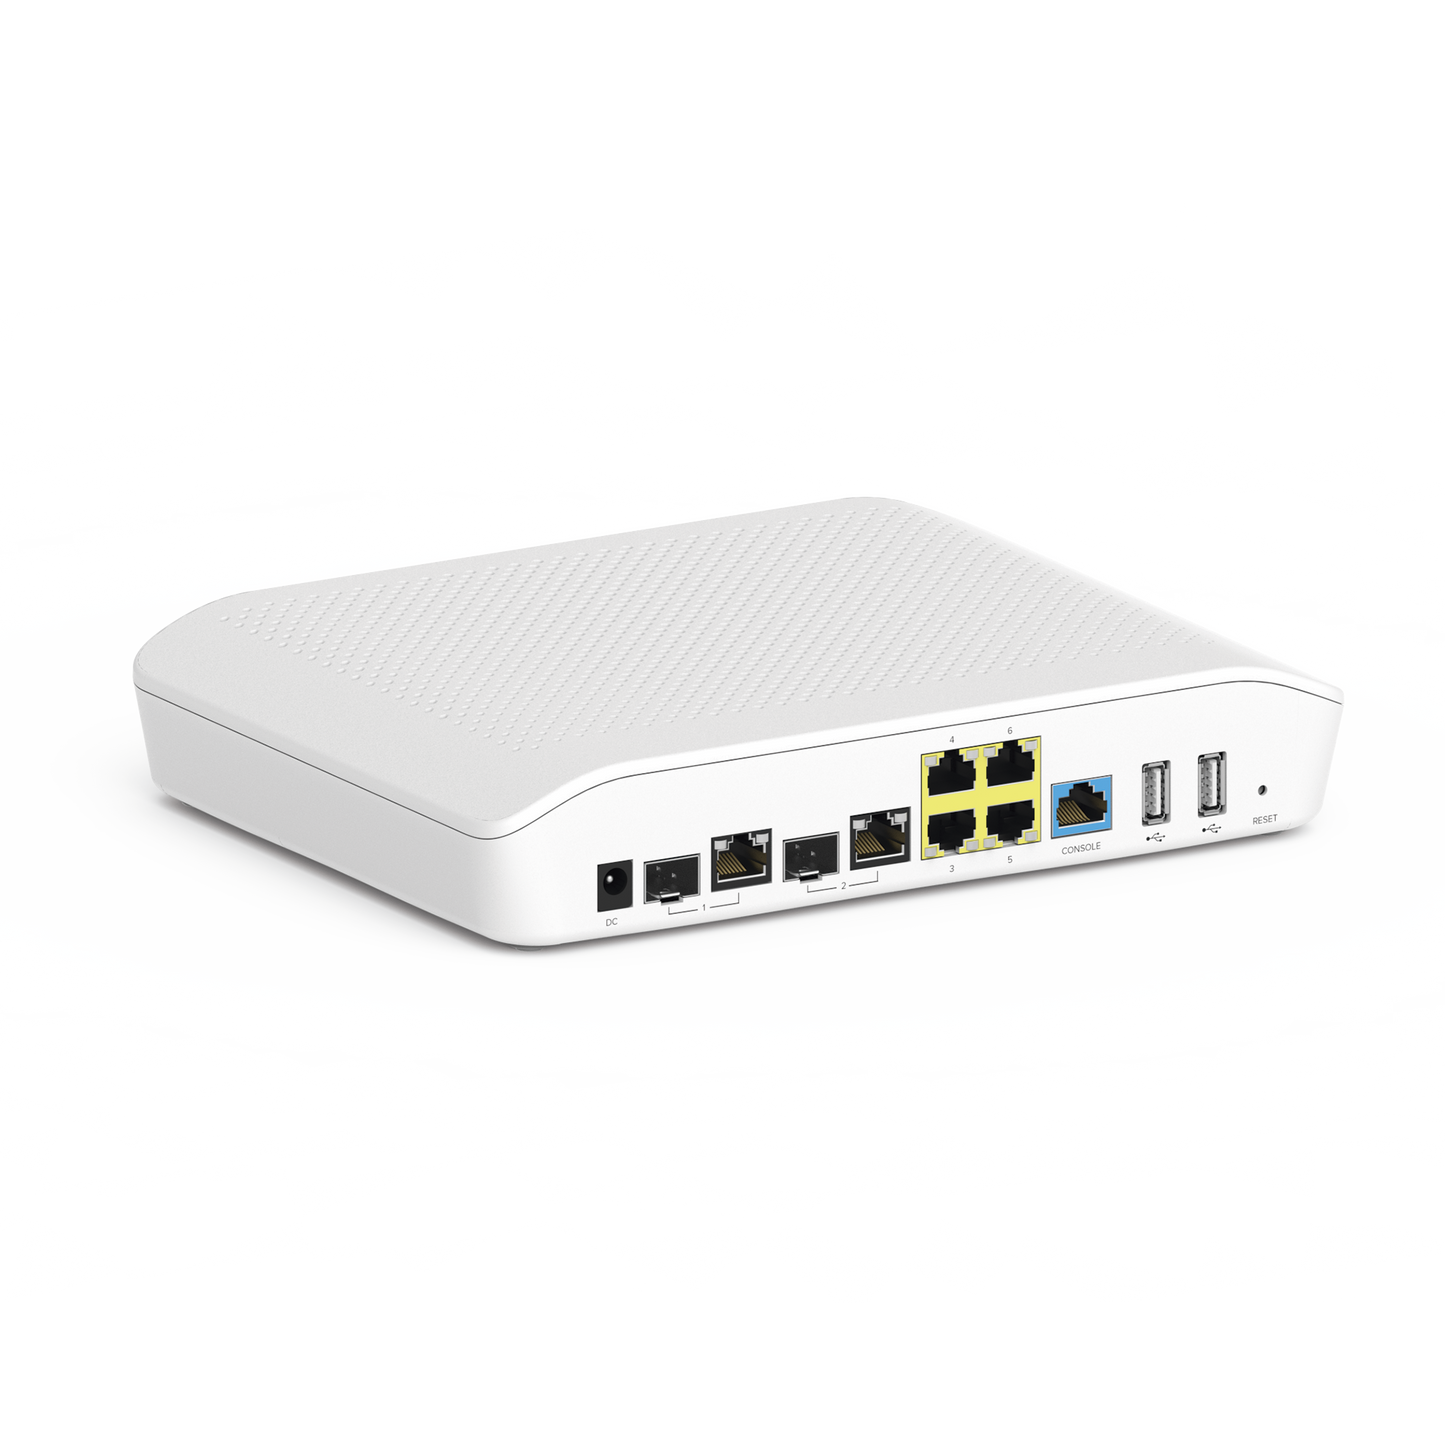 Router/Firewall NSE3000 / 2 puertos WAN Gigabit + 2 SFP combo / 4 puertos LAN Gigabit / Gestión Unificada de Amenazadas / Administración desde la Nube con cnMaestro / Hasta 300 dispositivos